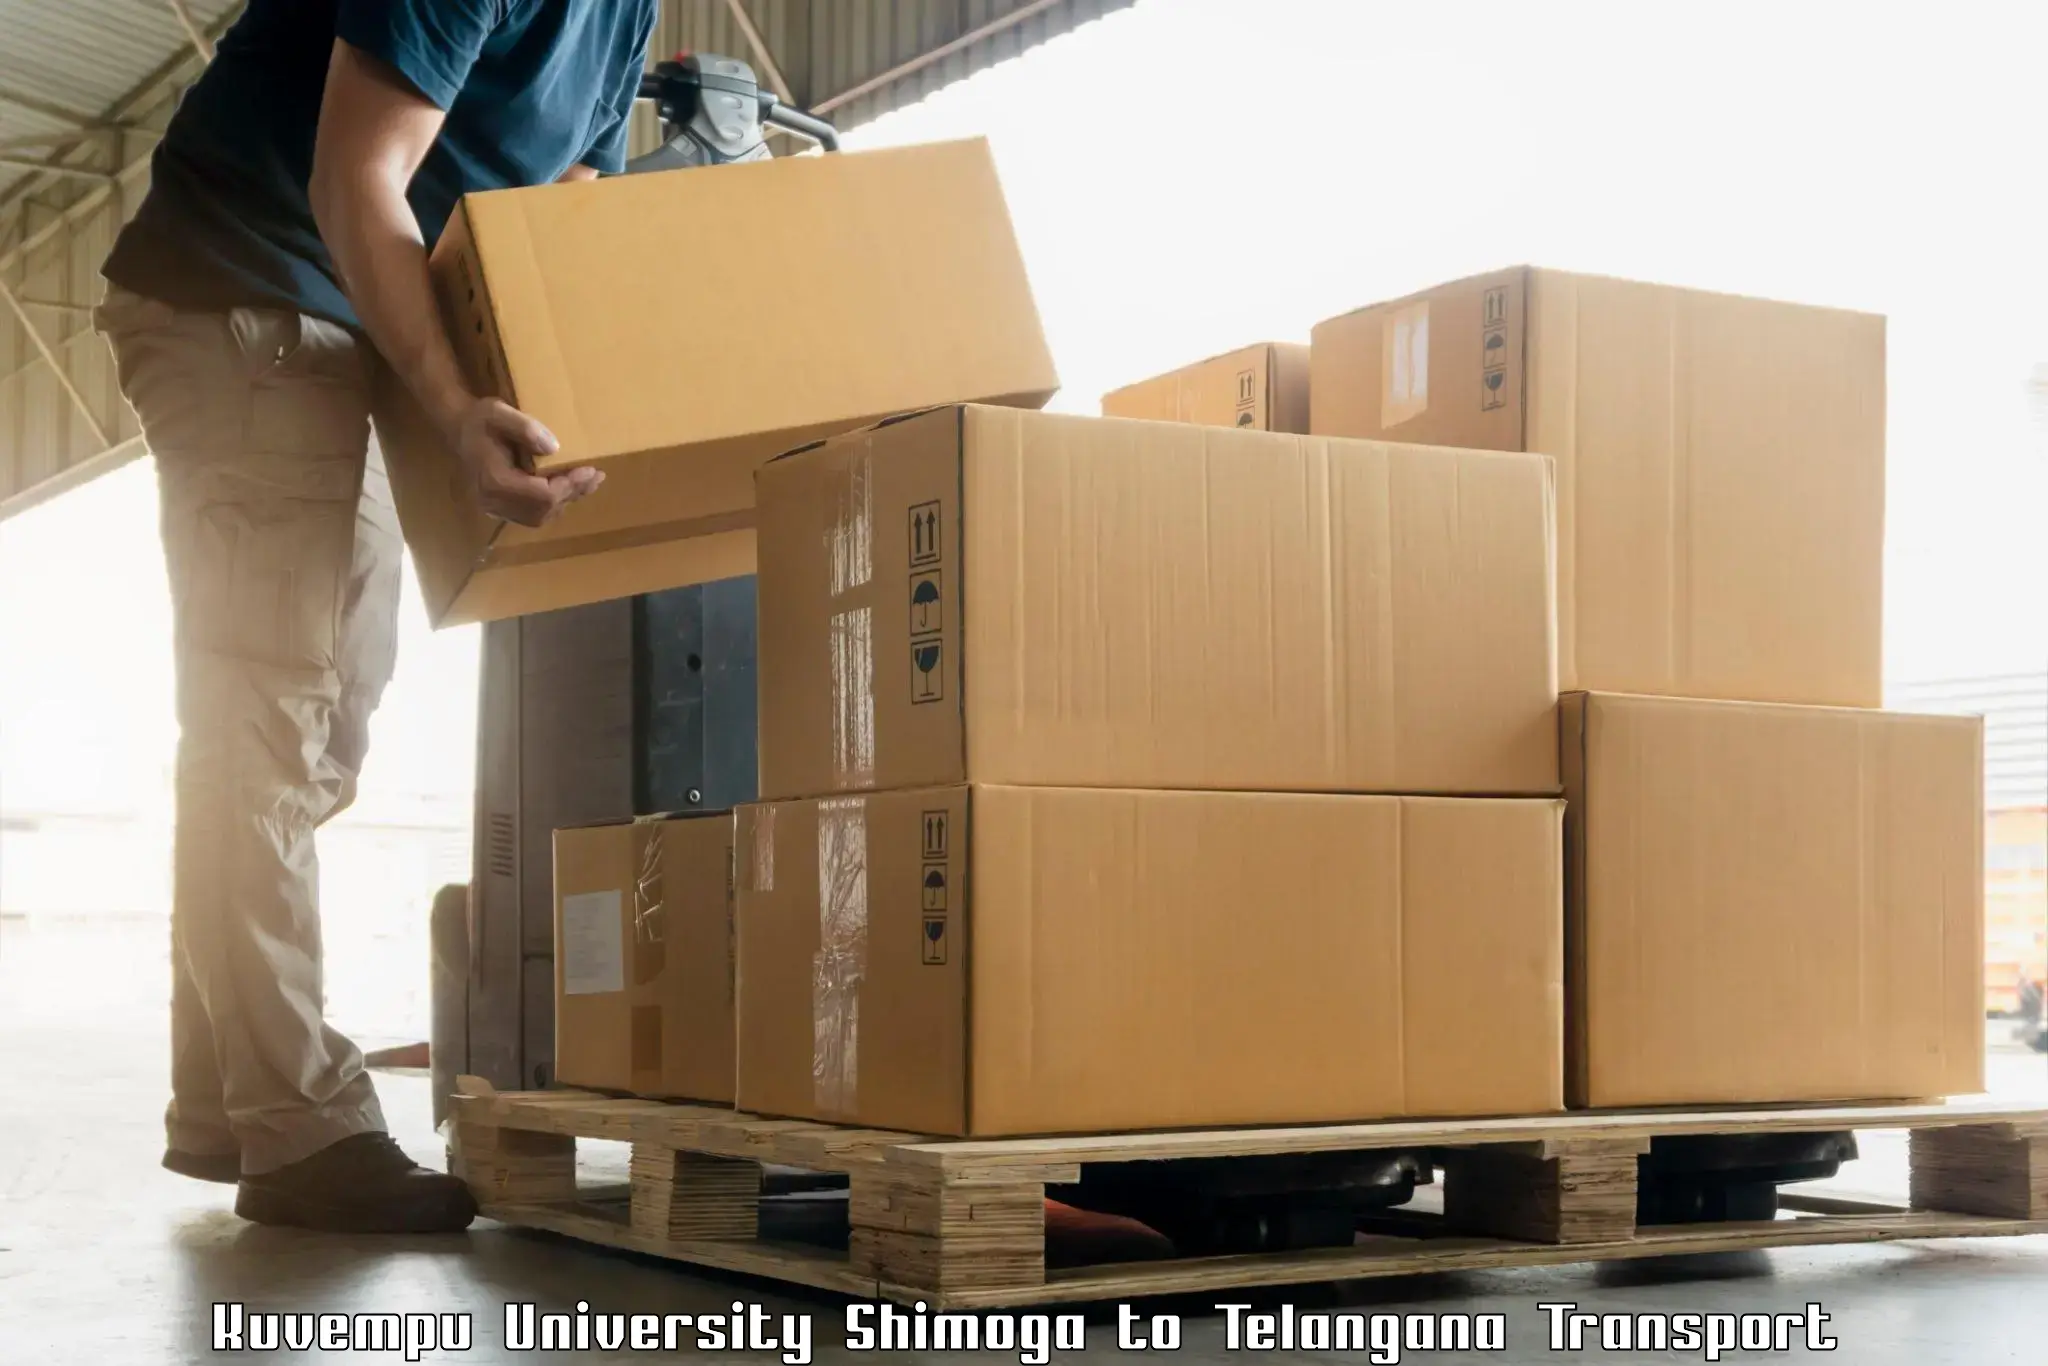 Luggage transport services Kuvempu University Shimoga to Kothakota